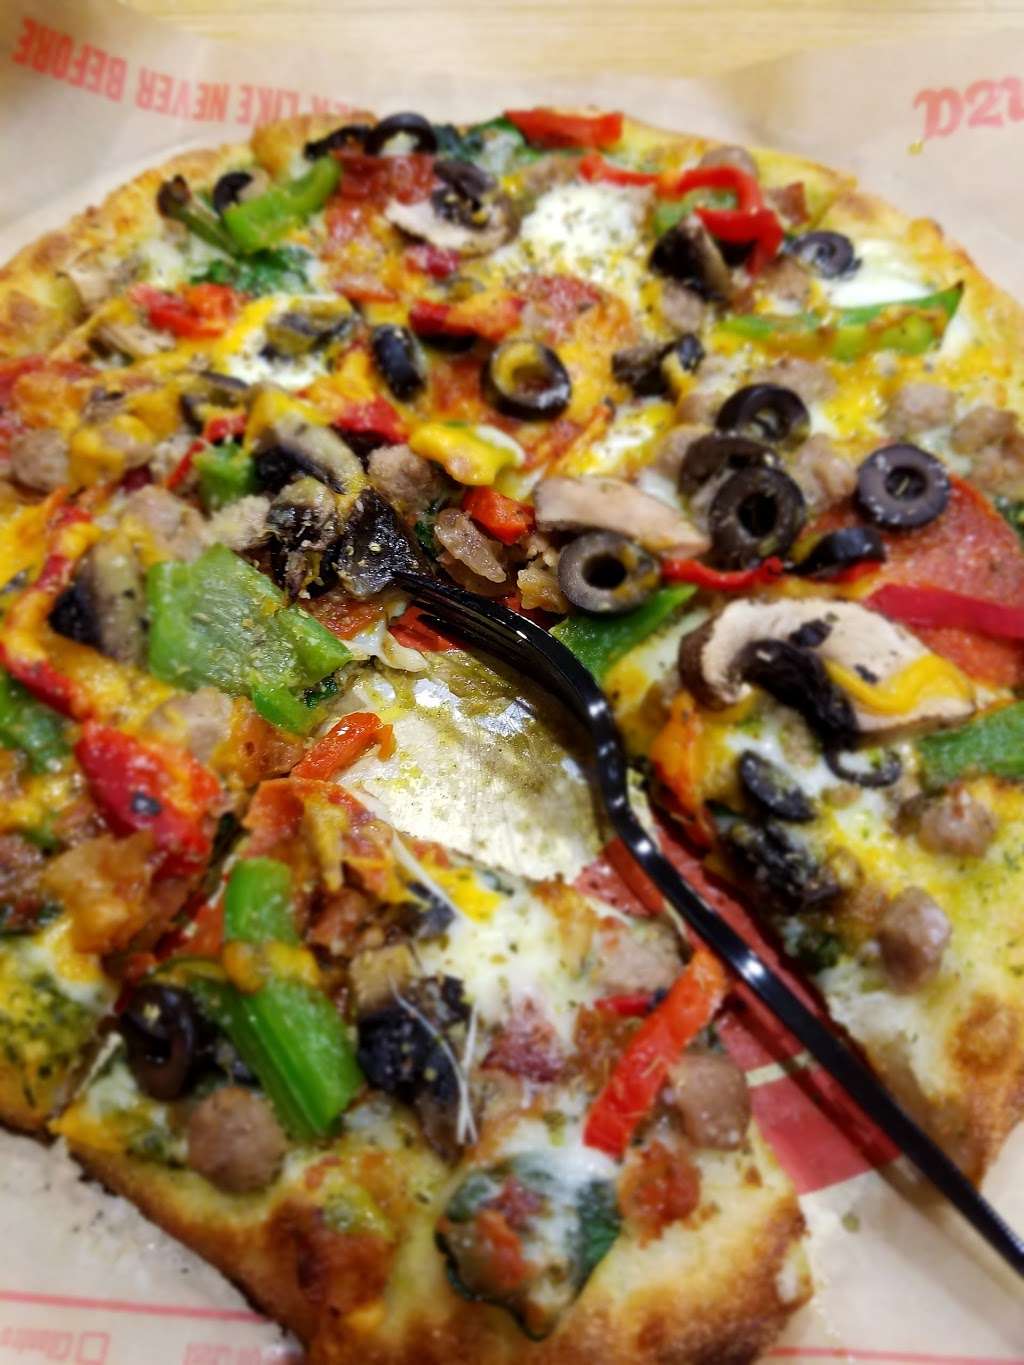 Firenza Pizza | 7001 Manchester Blvd, Alexandria, VA 22310 | Phone: (571) 551-6438